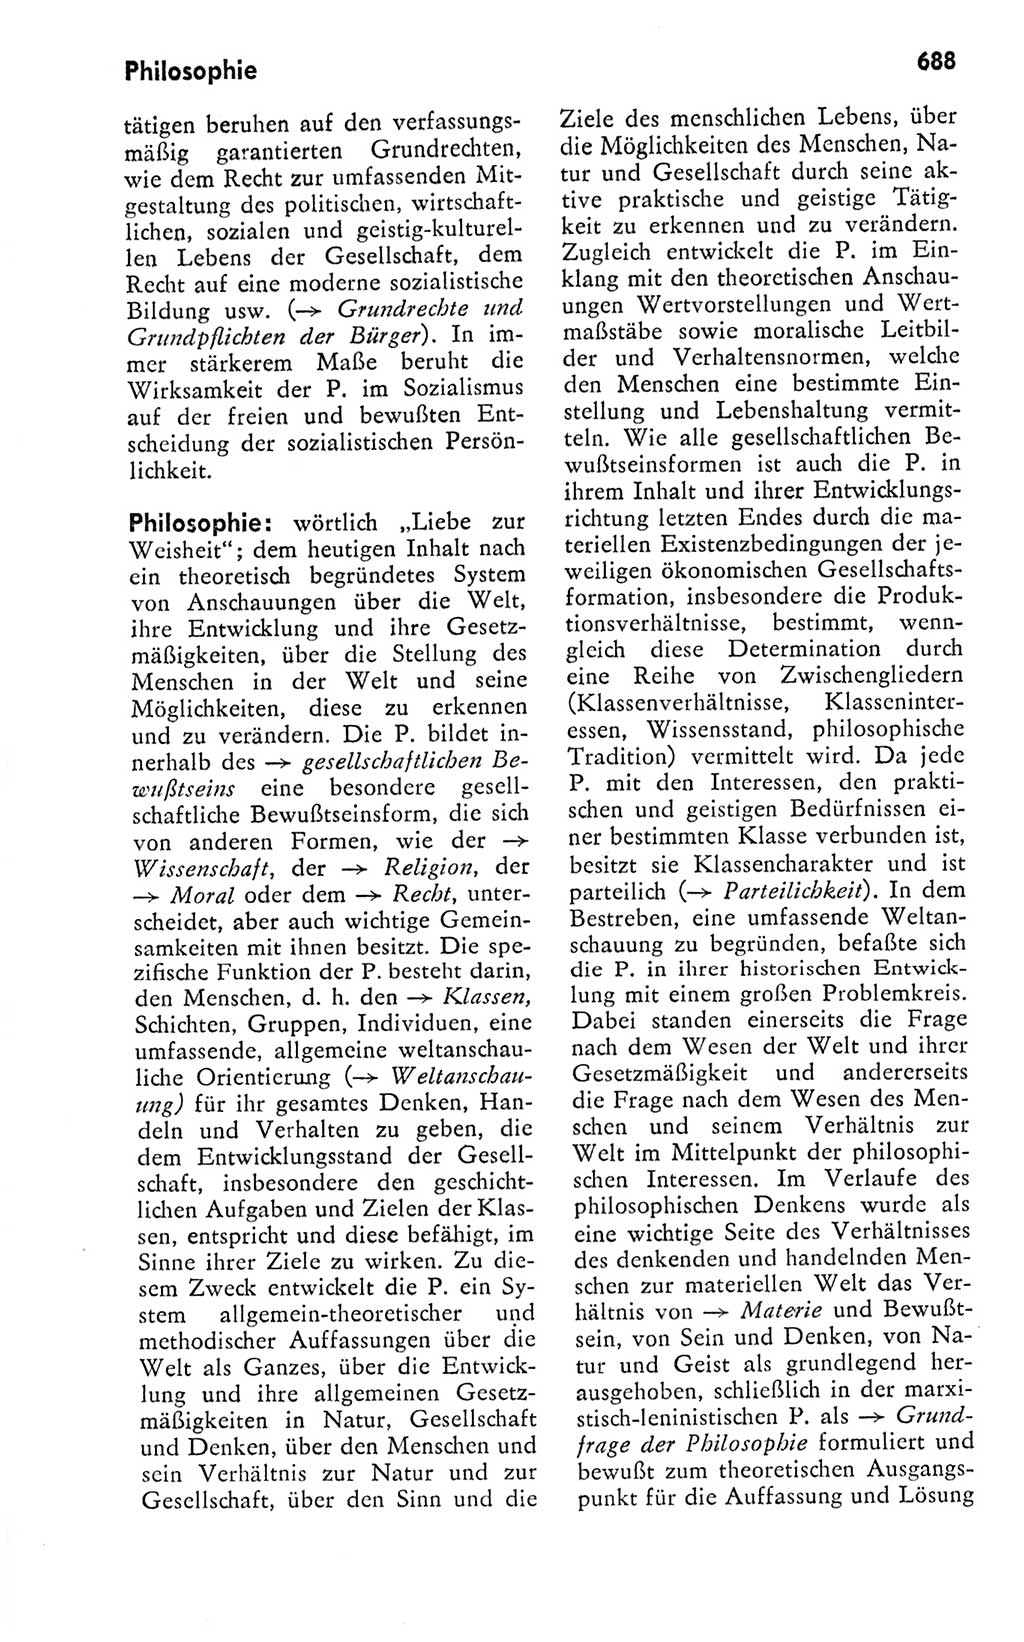 Kleines politisches Wörterbuch [Deutsche Demokratische Republik (DDR)] 1978, Seite 688 (Kl. pol. Wb. DDR 1978, S. 688)